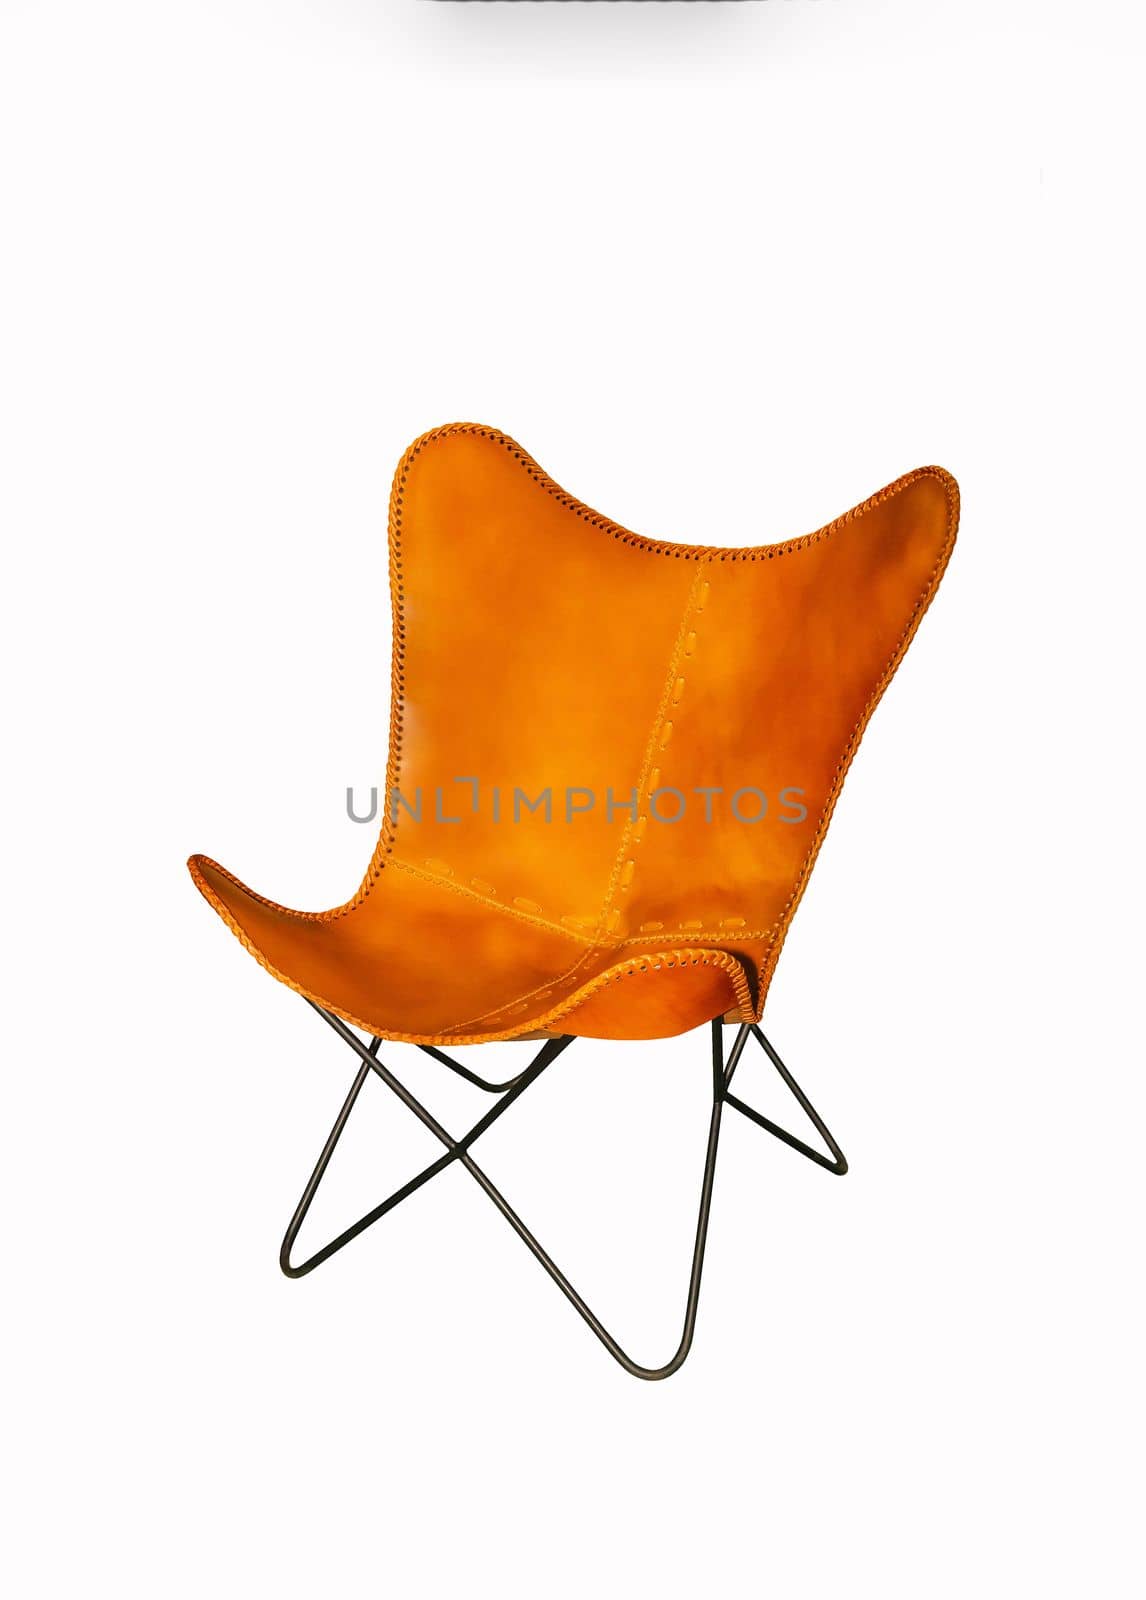 Leather garden chair on white background. Interior element.